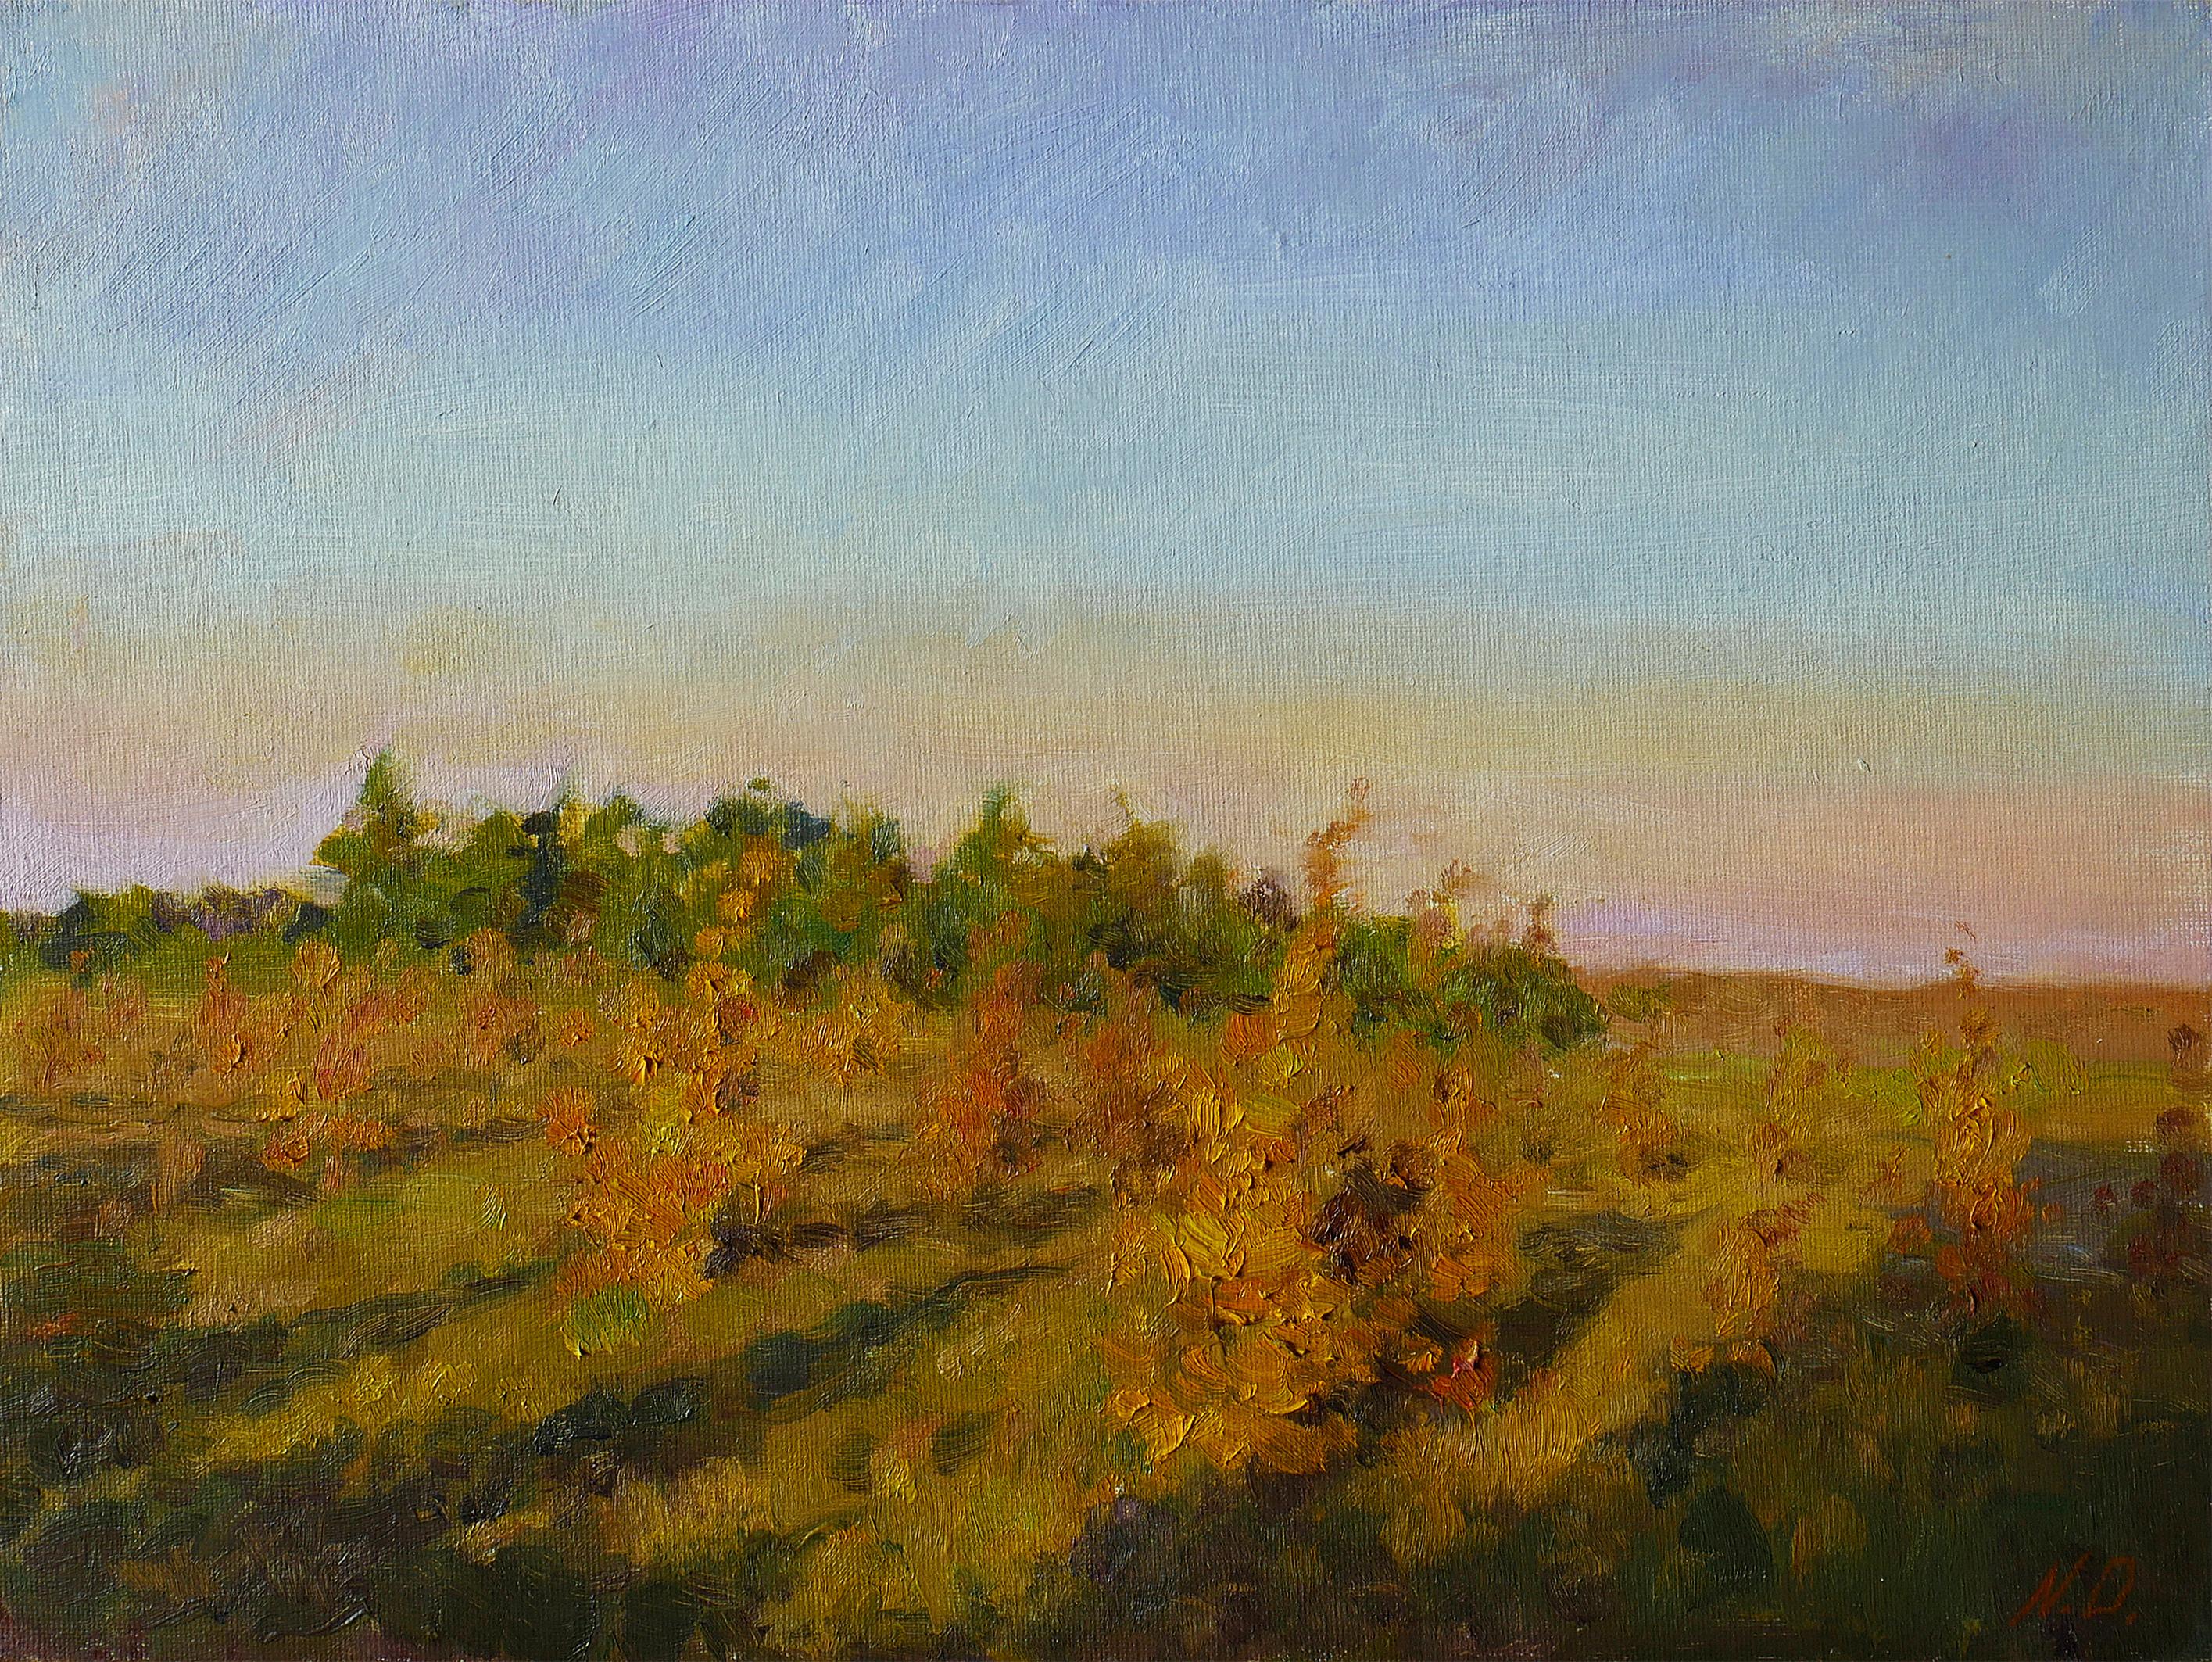 The Autumn Sunset - peinture de paysage au coucher du soleil